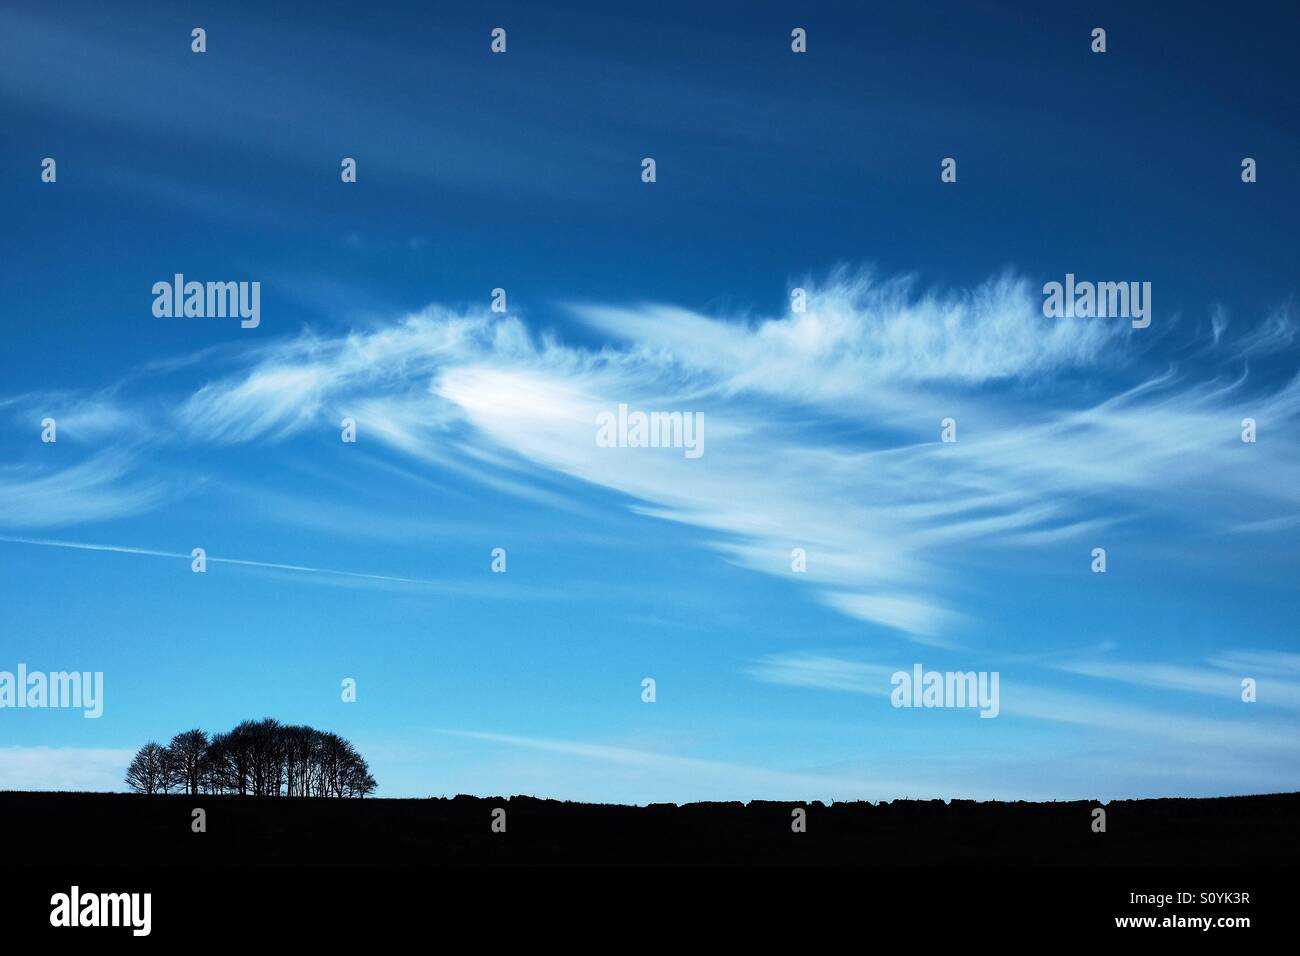 Cirruswolken am blauen Himmel oben ein Niederwald Bäume zusammen mit einer Trockensteinmauer Silhouette. Stockfoto